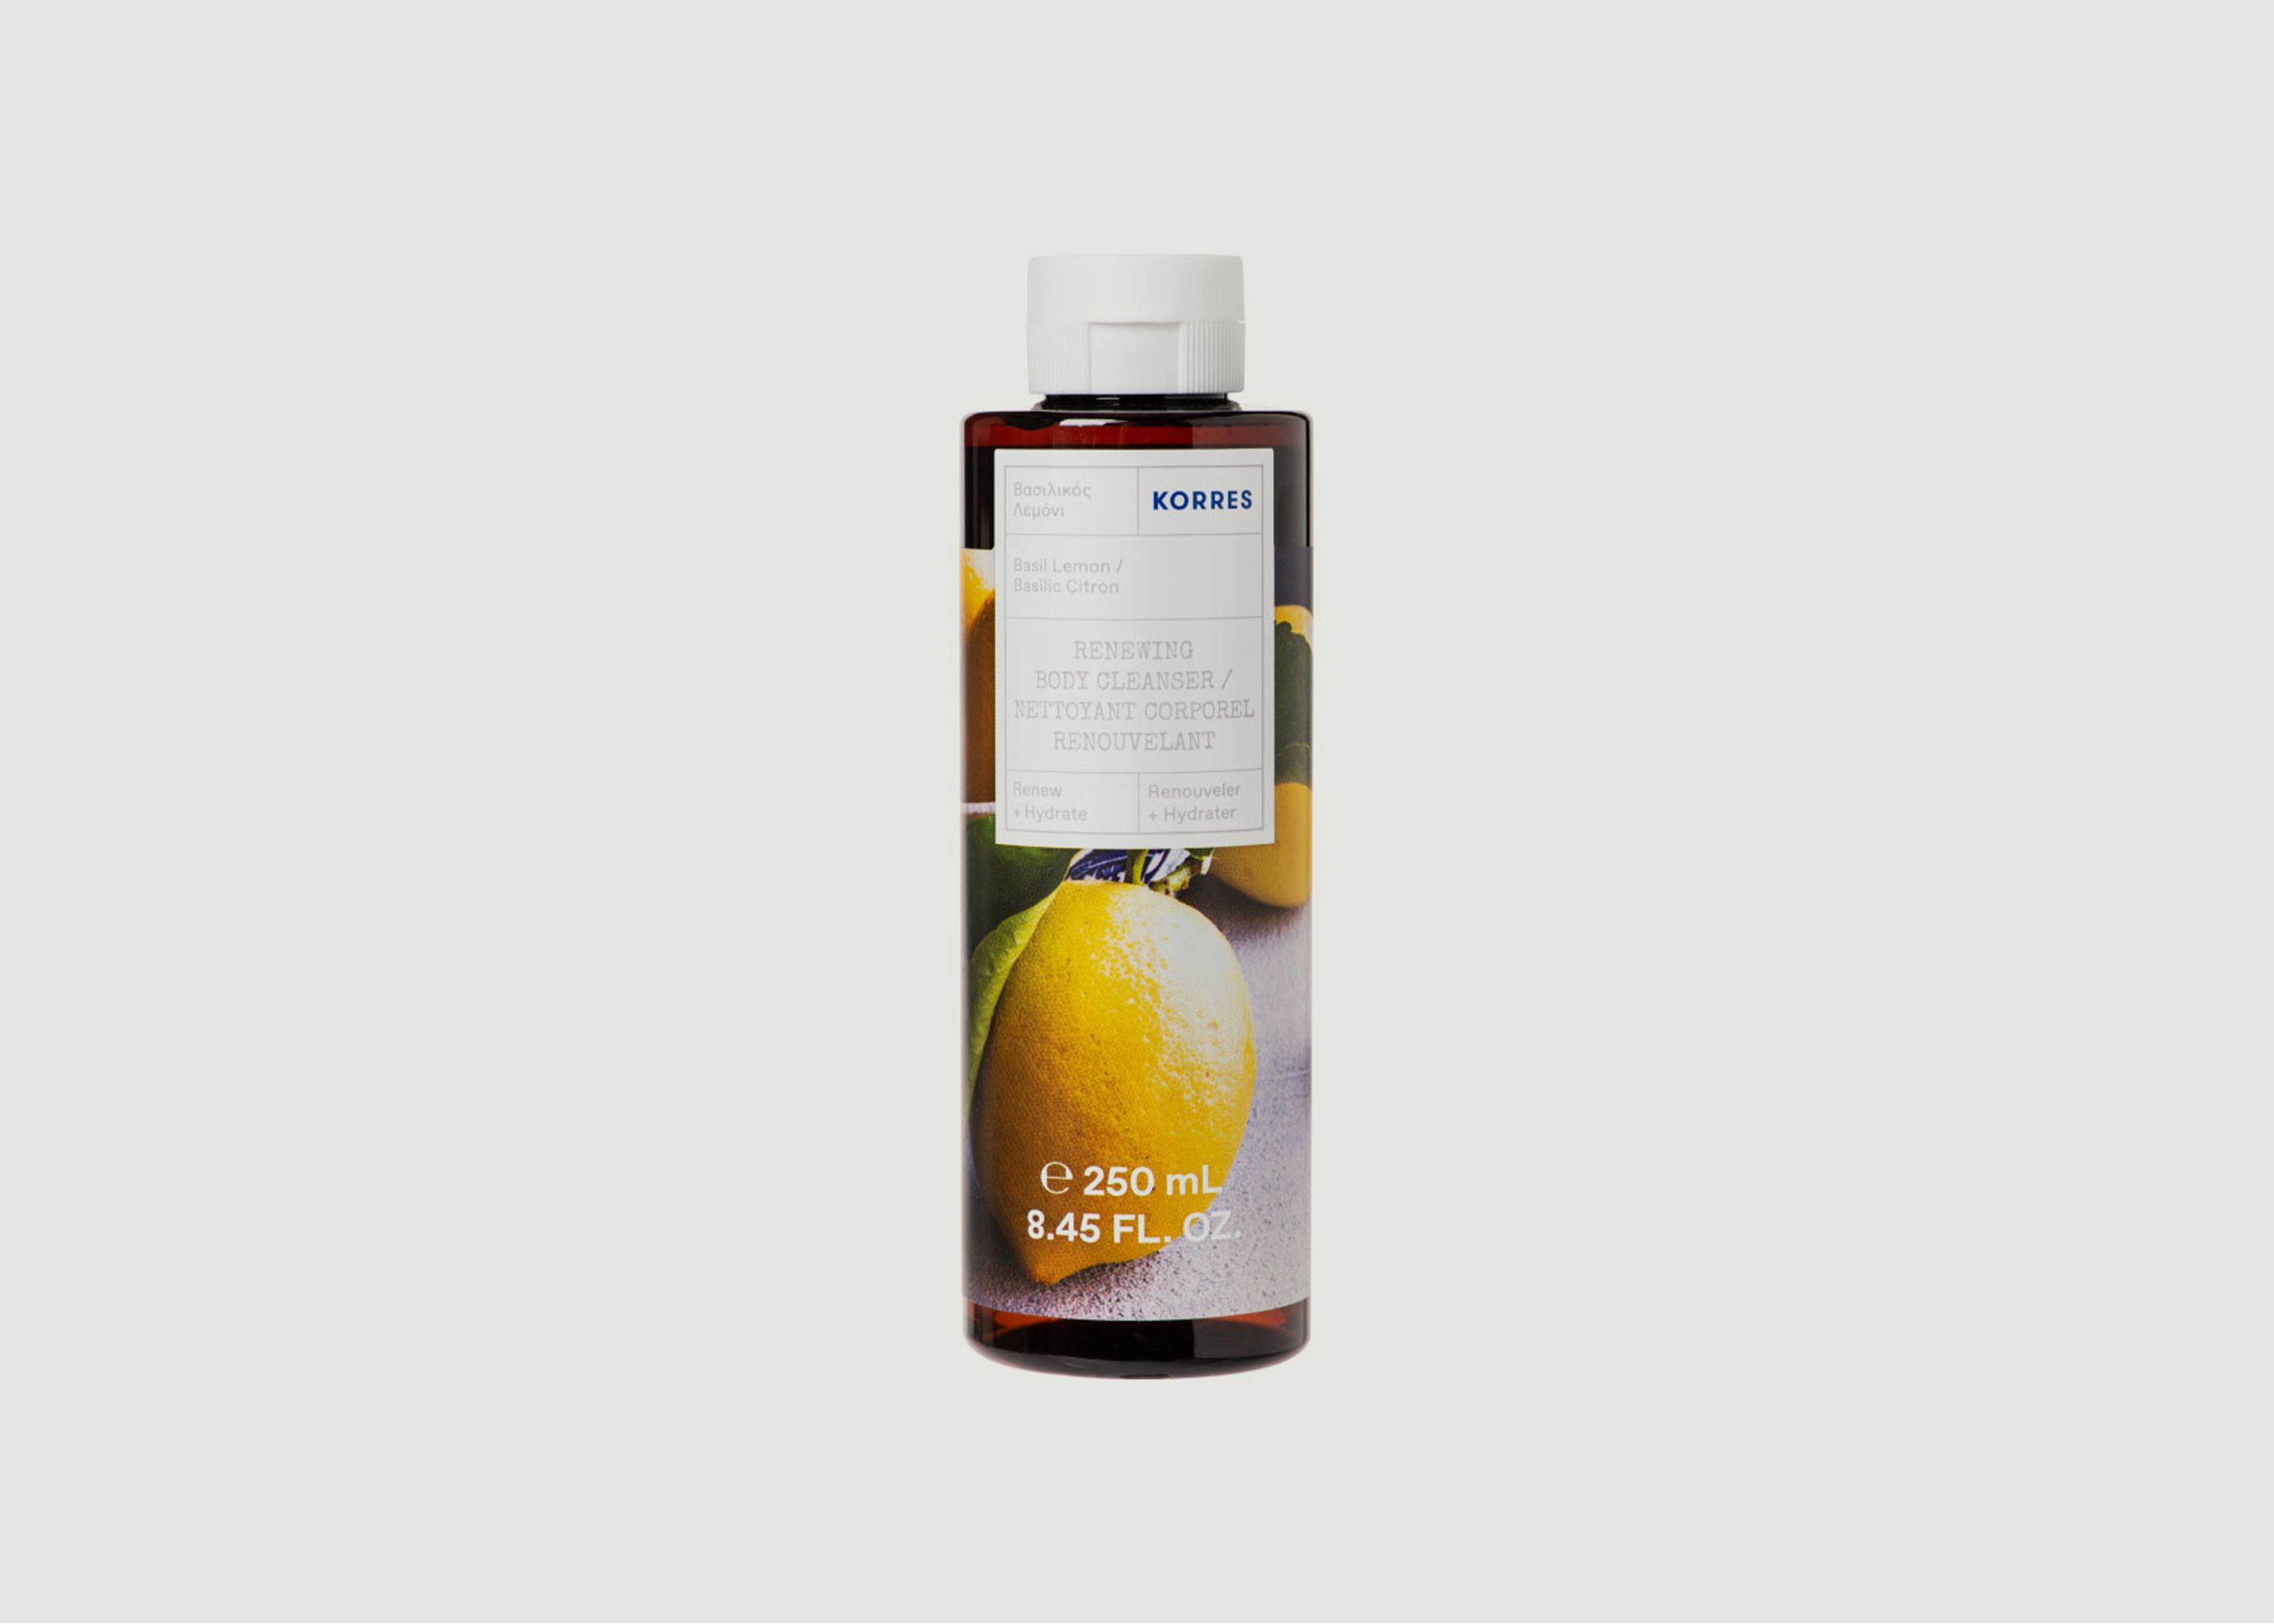 Shower gel basil lemon 250ml - Korres